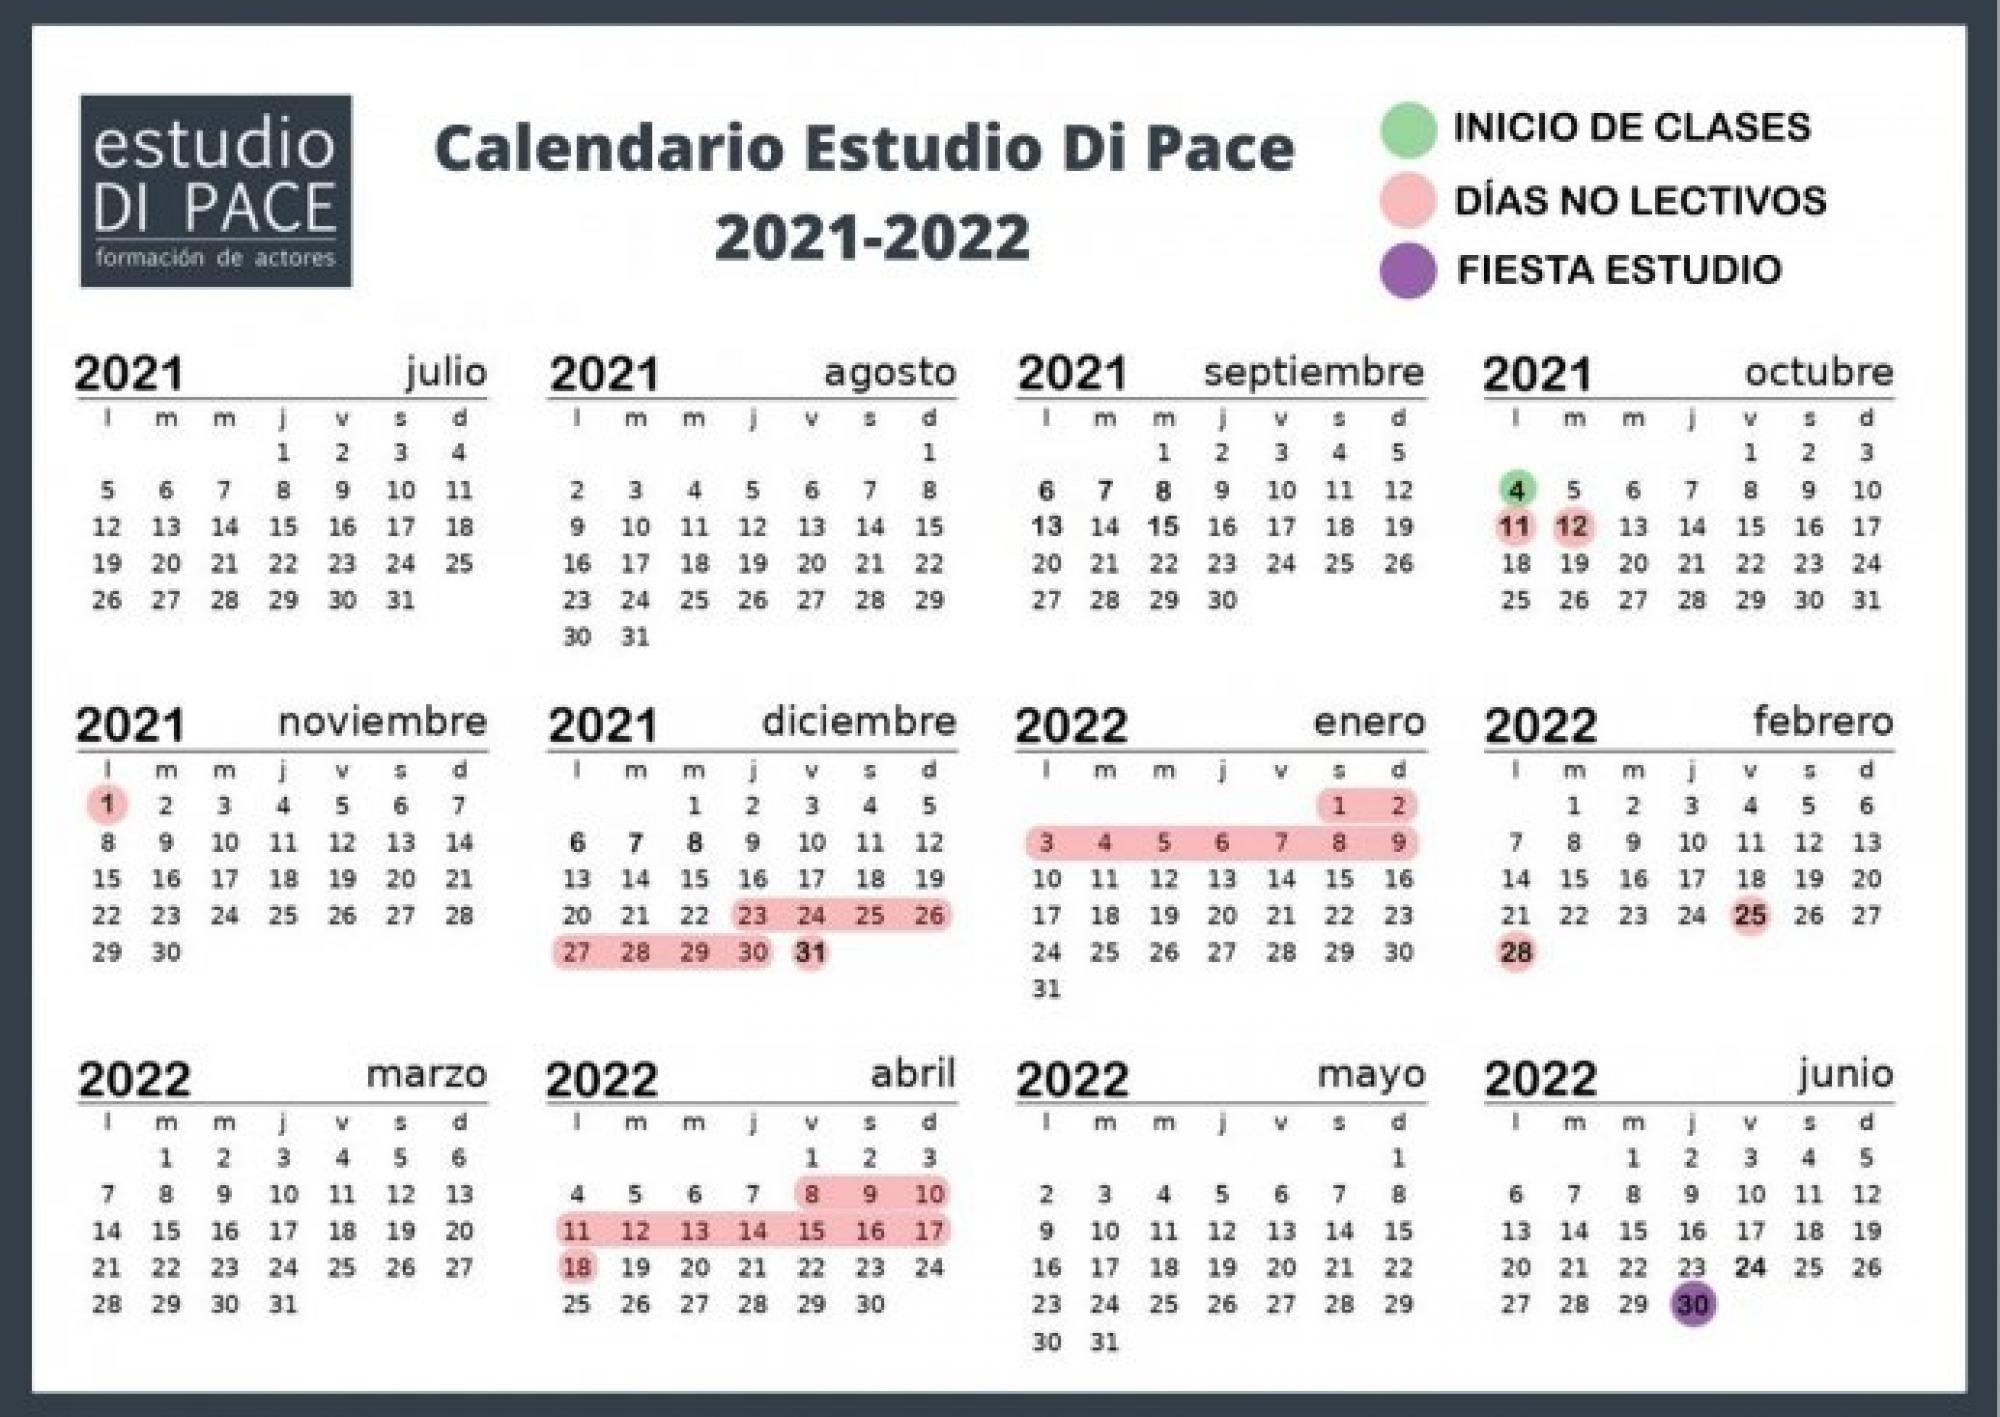 Calendario Estudio Di Pace 2021 2022